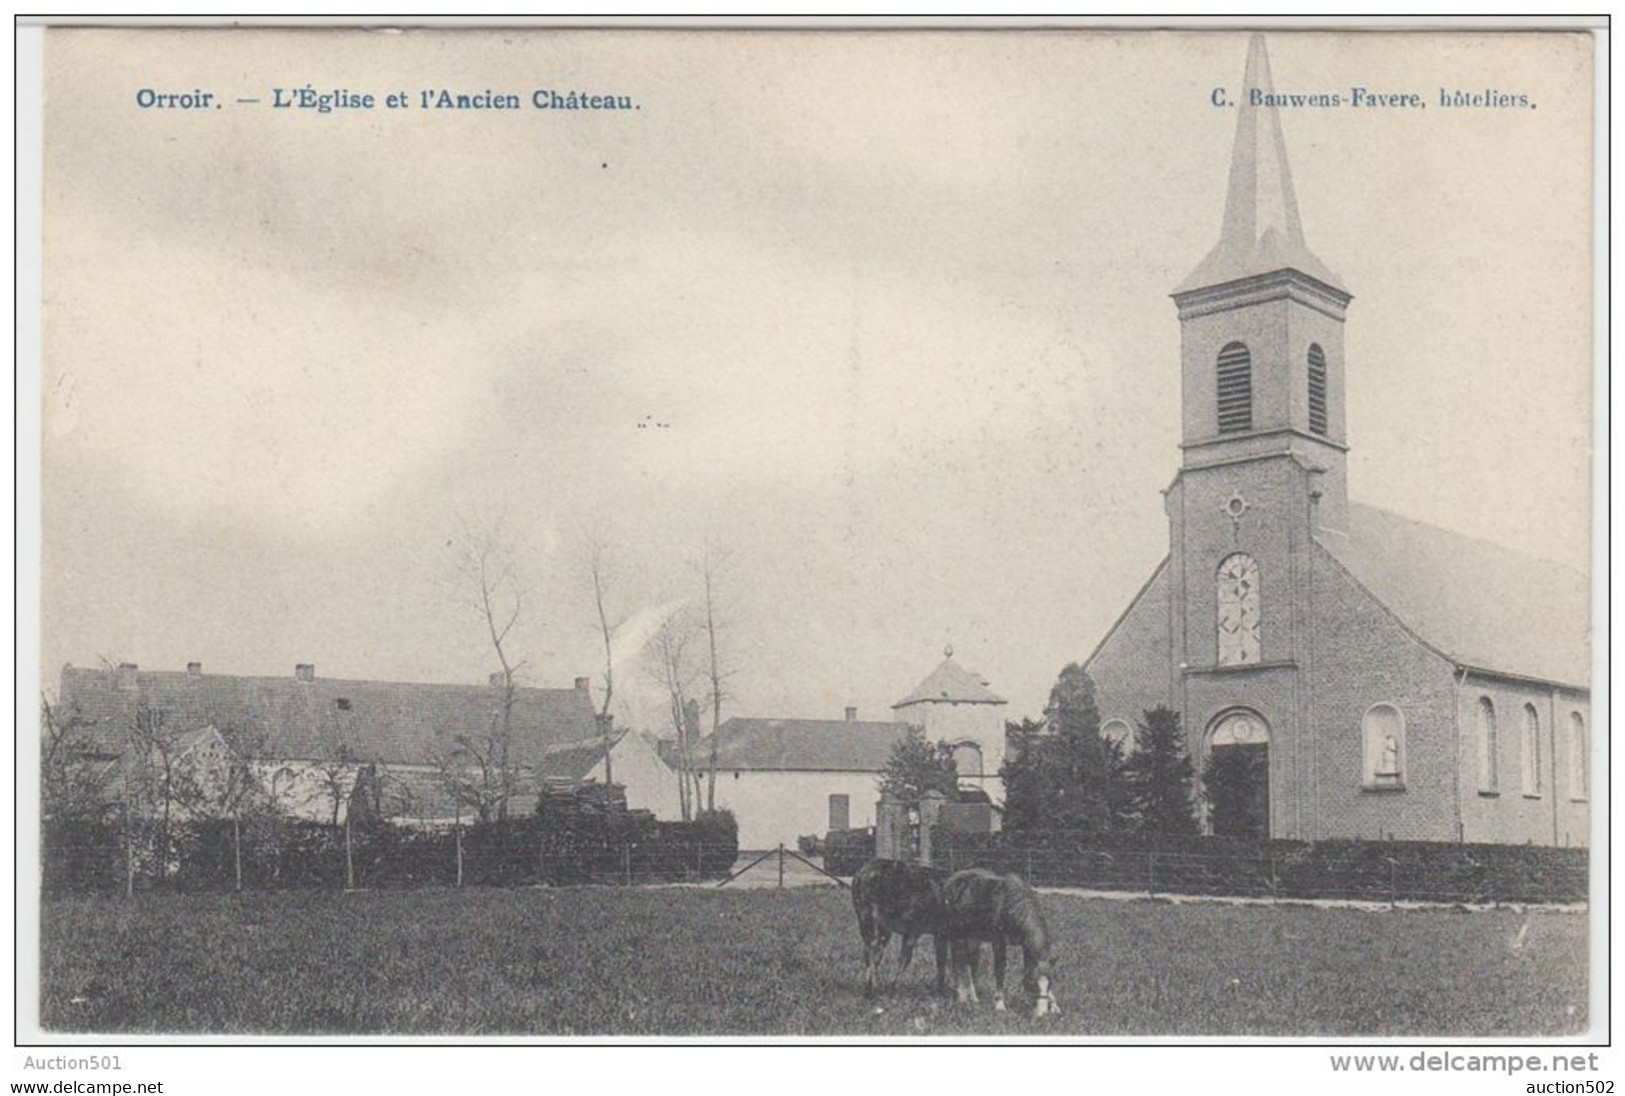 22127g CHATEAU - EGLISE - PRAIRIE - Orroir - 1908 - Mont-de-l'Enclus